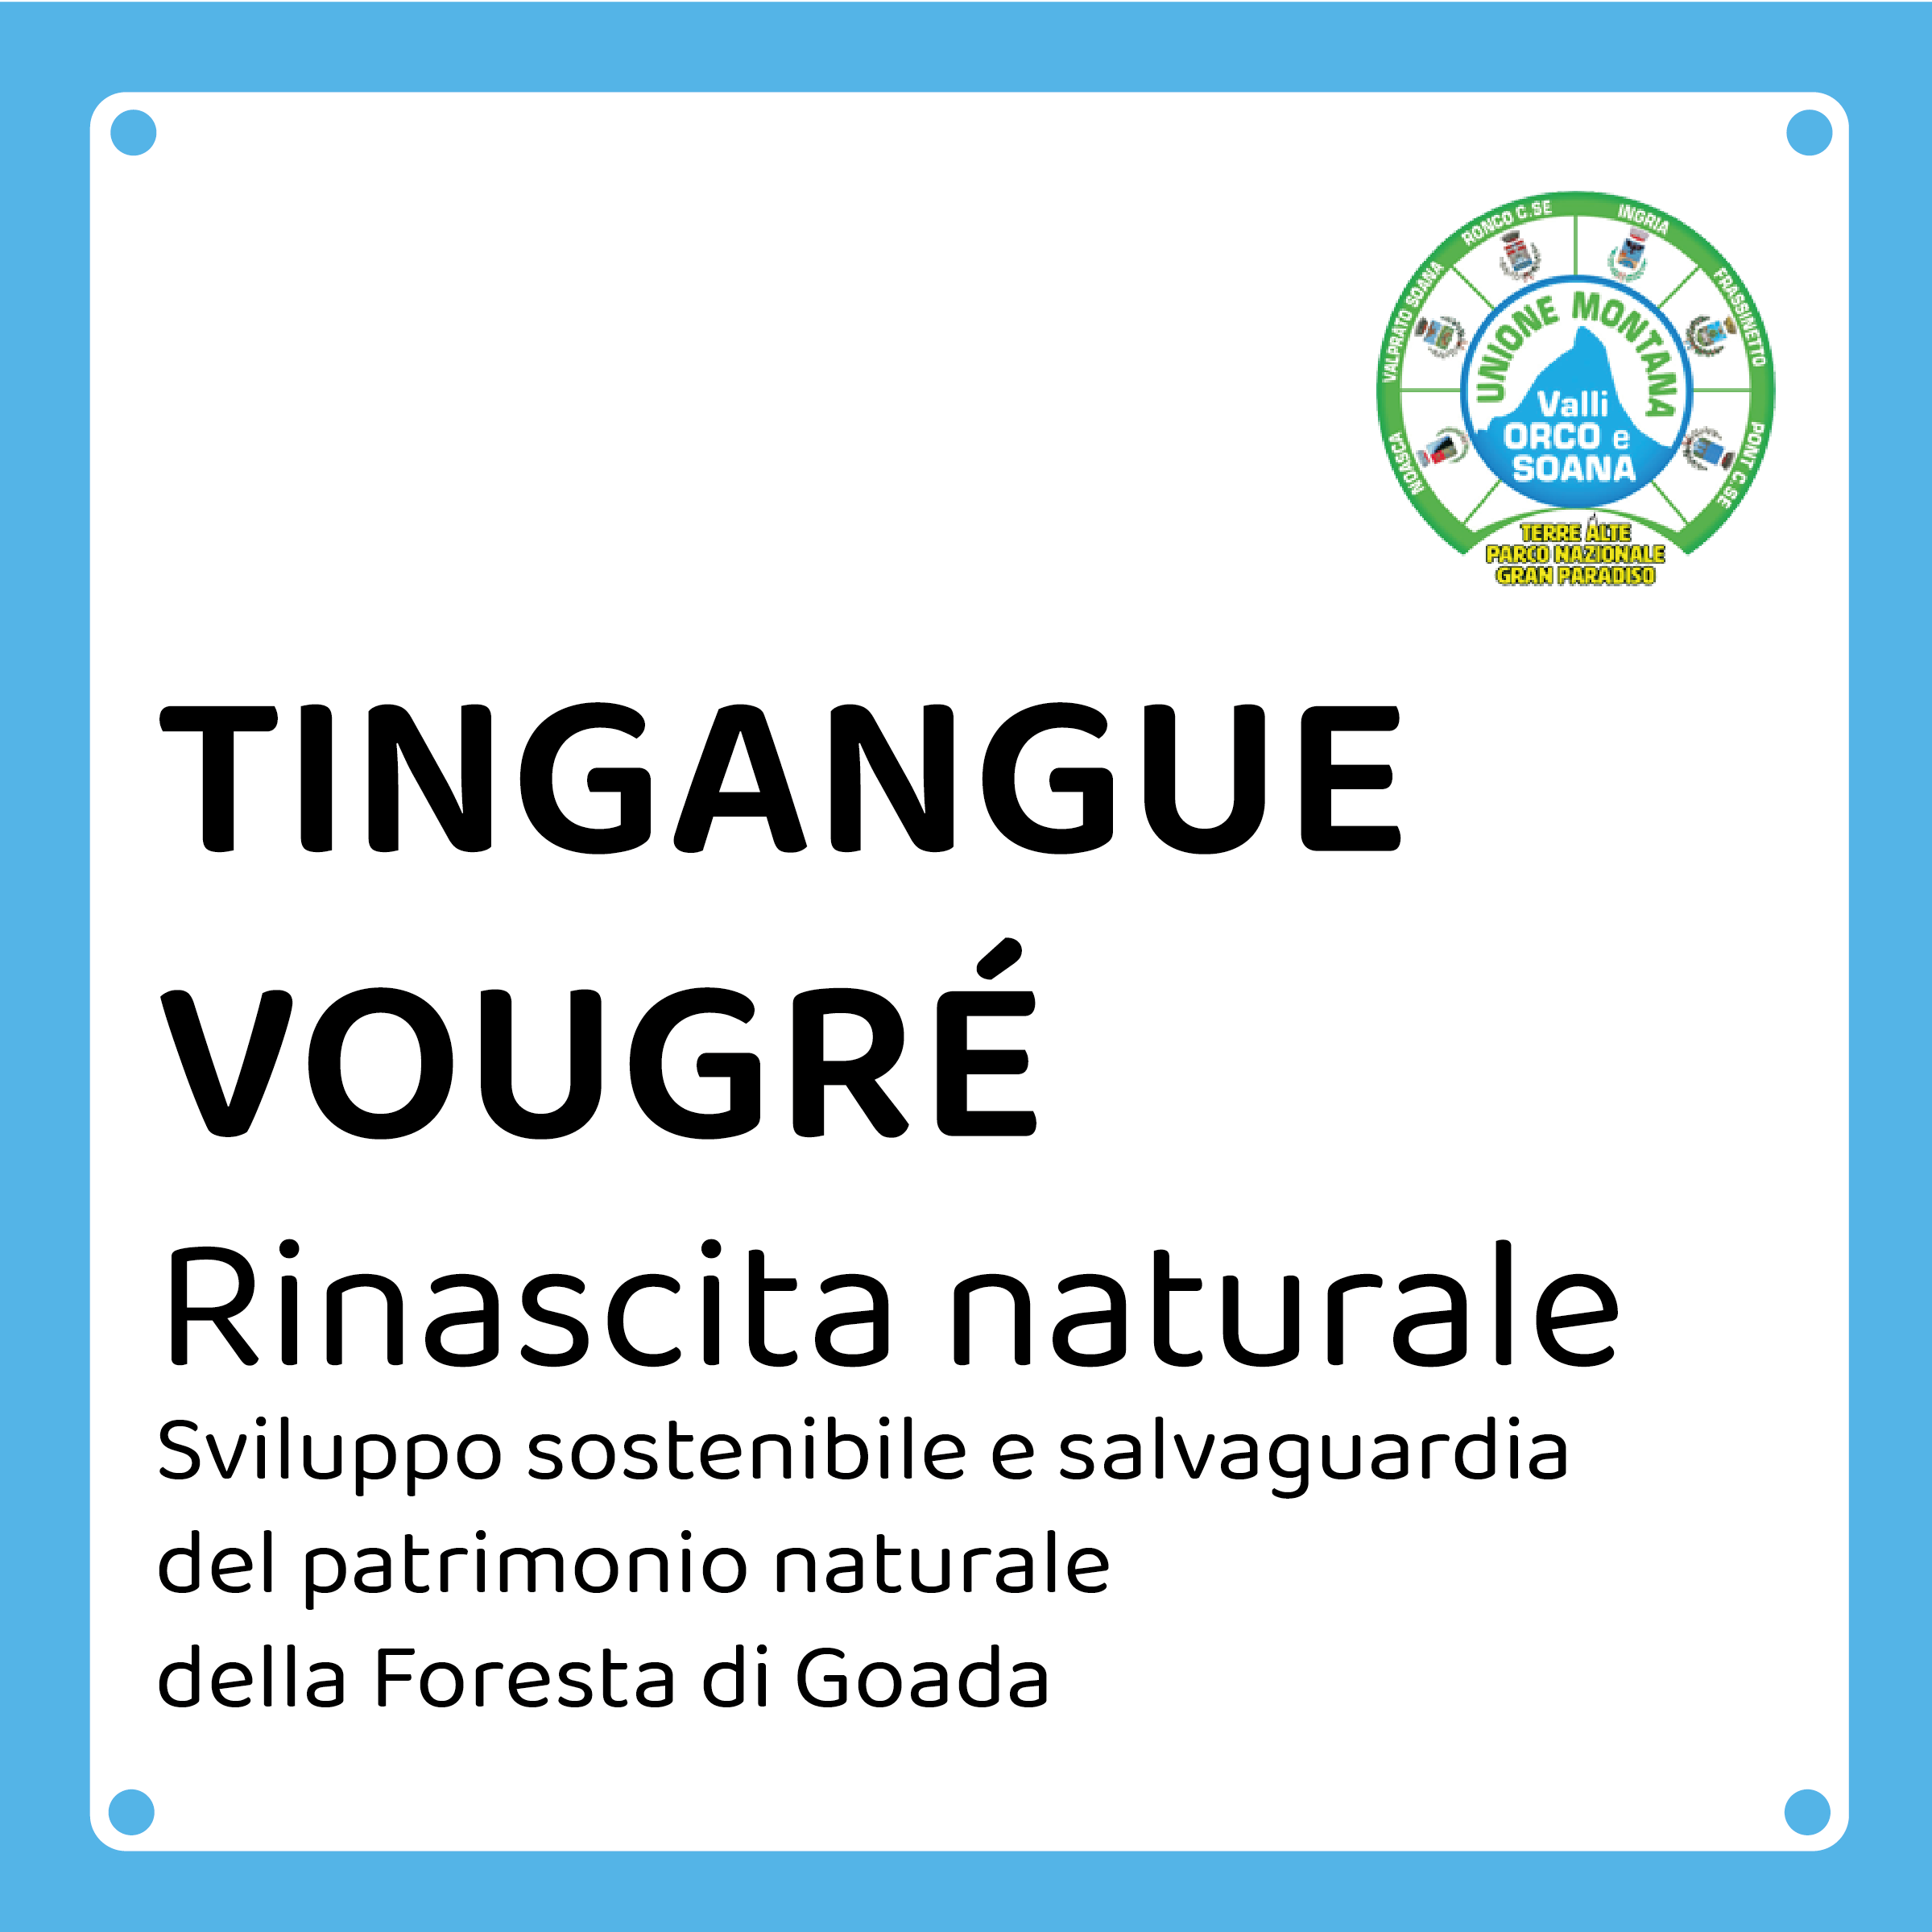 TINGANGUE VOUGRÉ - Rinascita naturale - Sviluppo sostenibile e salvaguardia del patrimonio naturale della Foresta di Goada